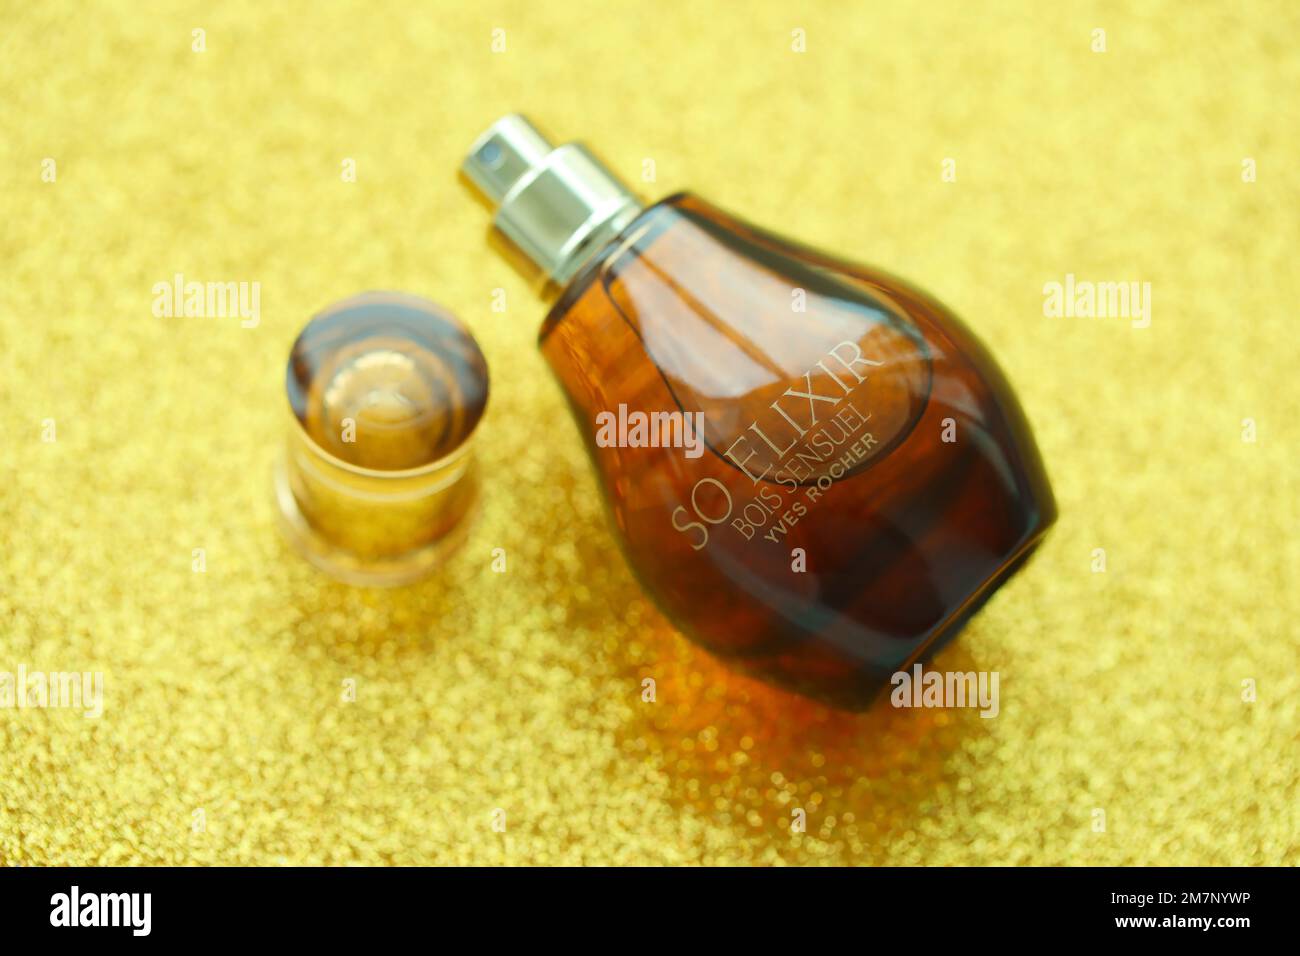 KYIV, UCRANIA - 4 DE MAYO de 2022 Botella de perfume So Elixir Bois Sensuei por Yves Rocher sobre fondo brillante Foto de stock